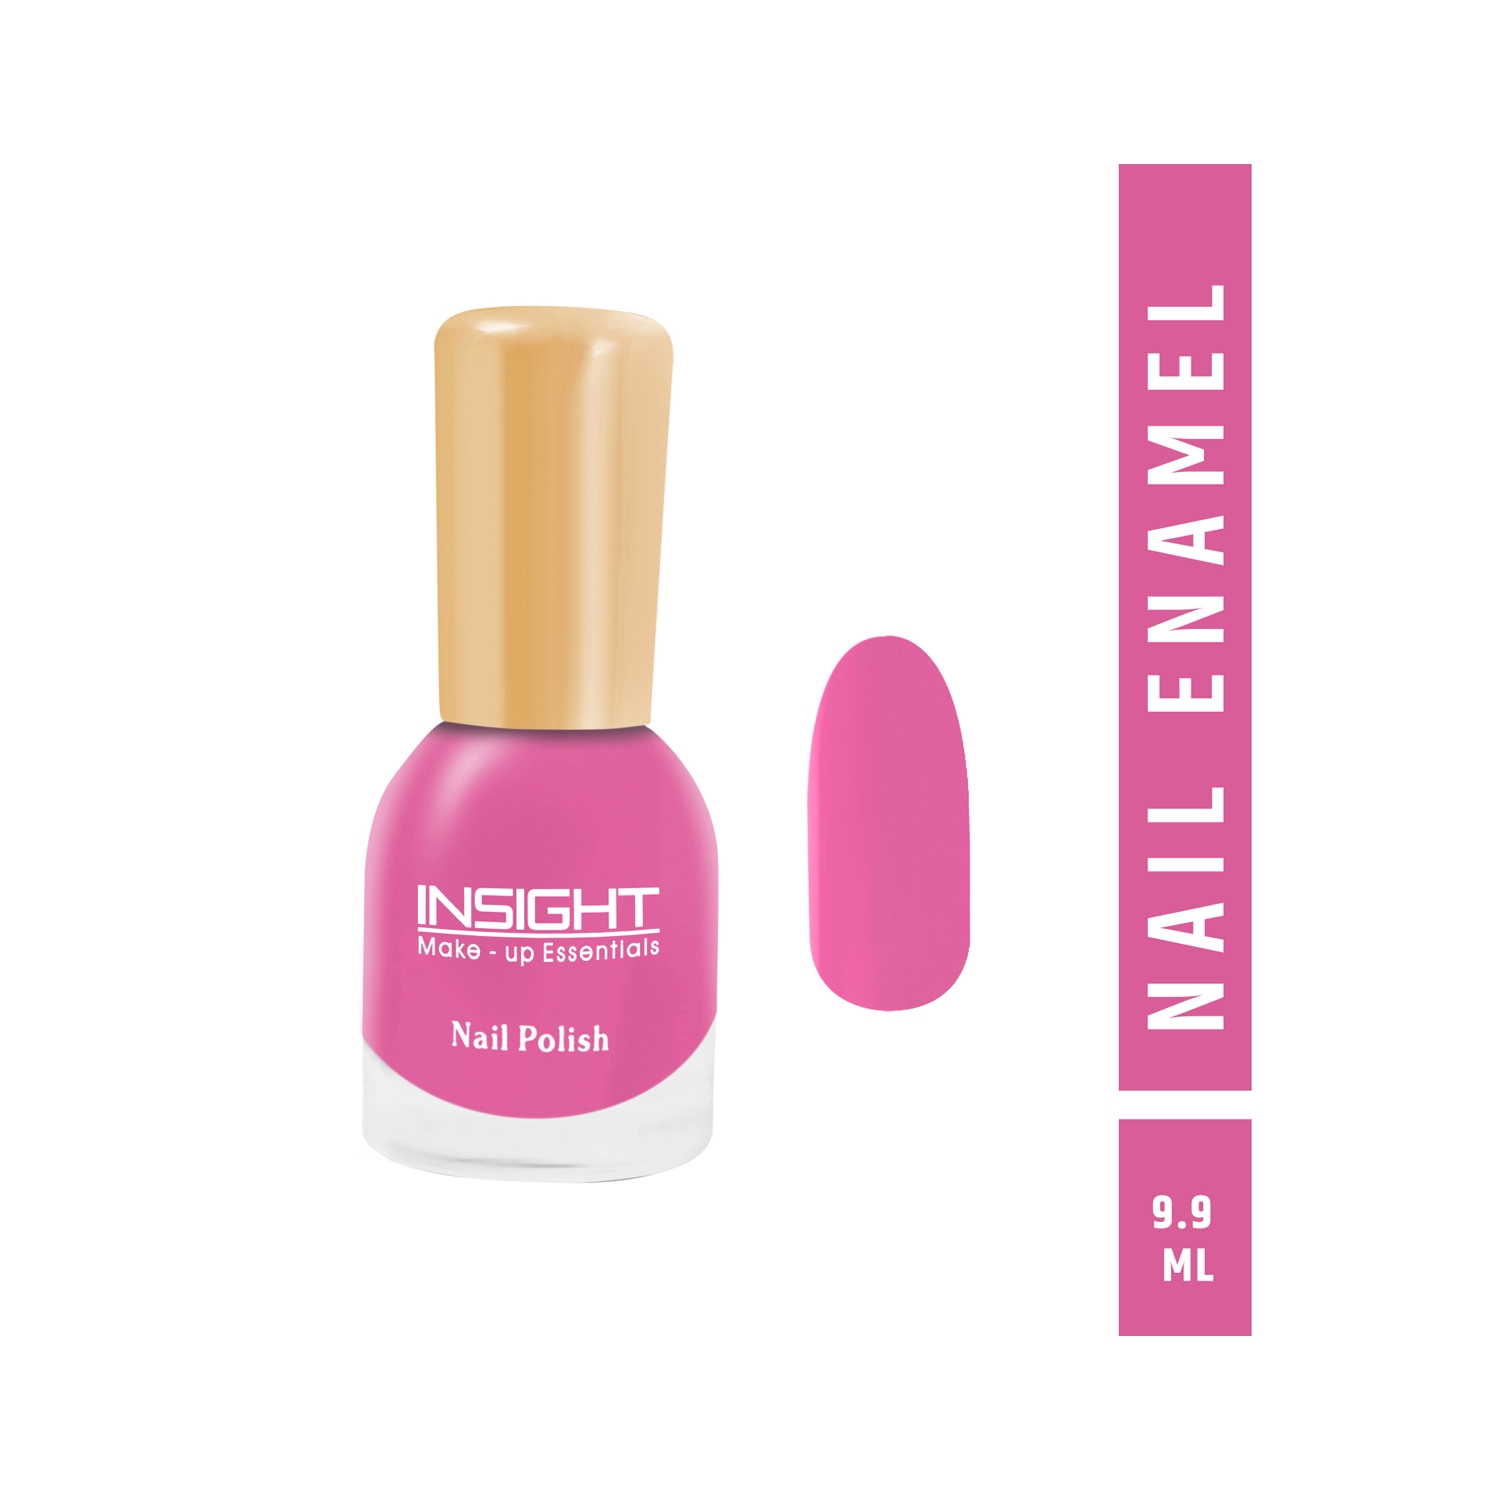 Insight Cosmetics | Insight Cosmetics Nail Polish - 25 Shade (9.9ml)